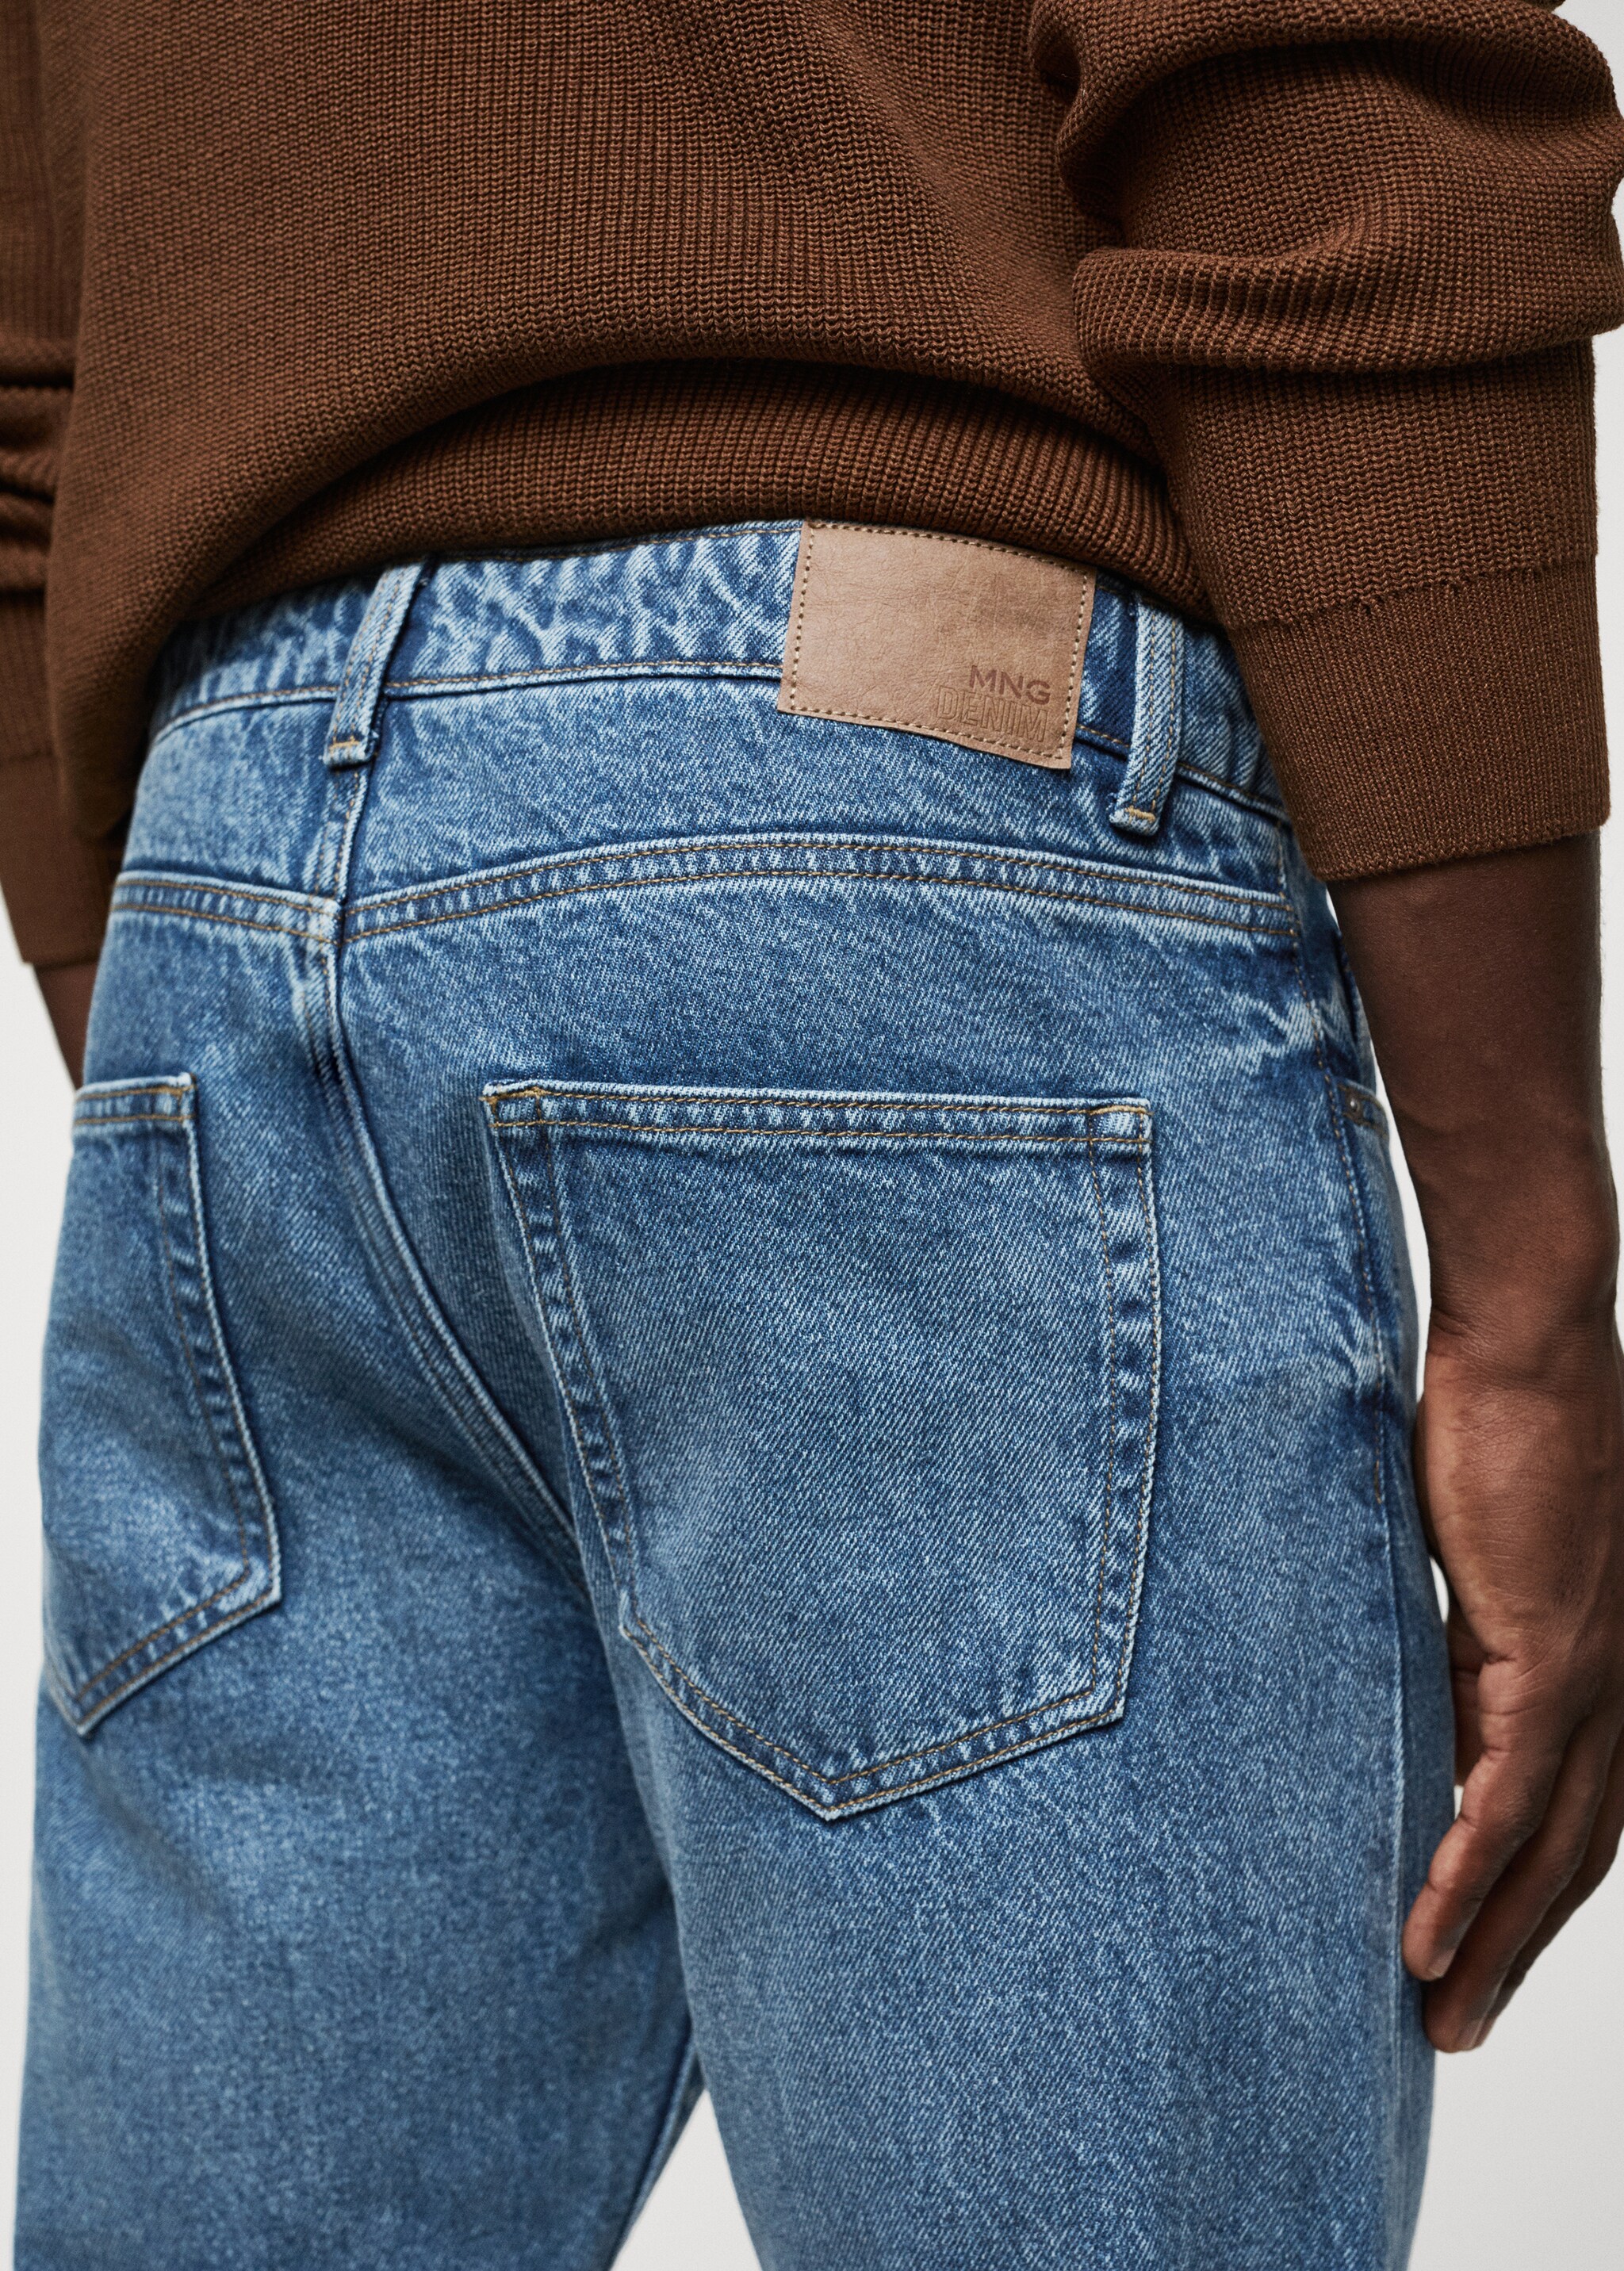 Jeans Bob Straight-fit - Artikkeldetalj 4